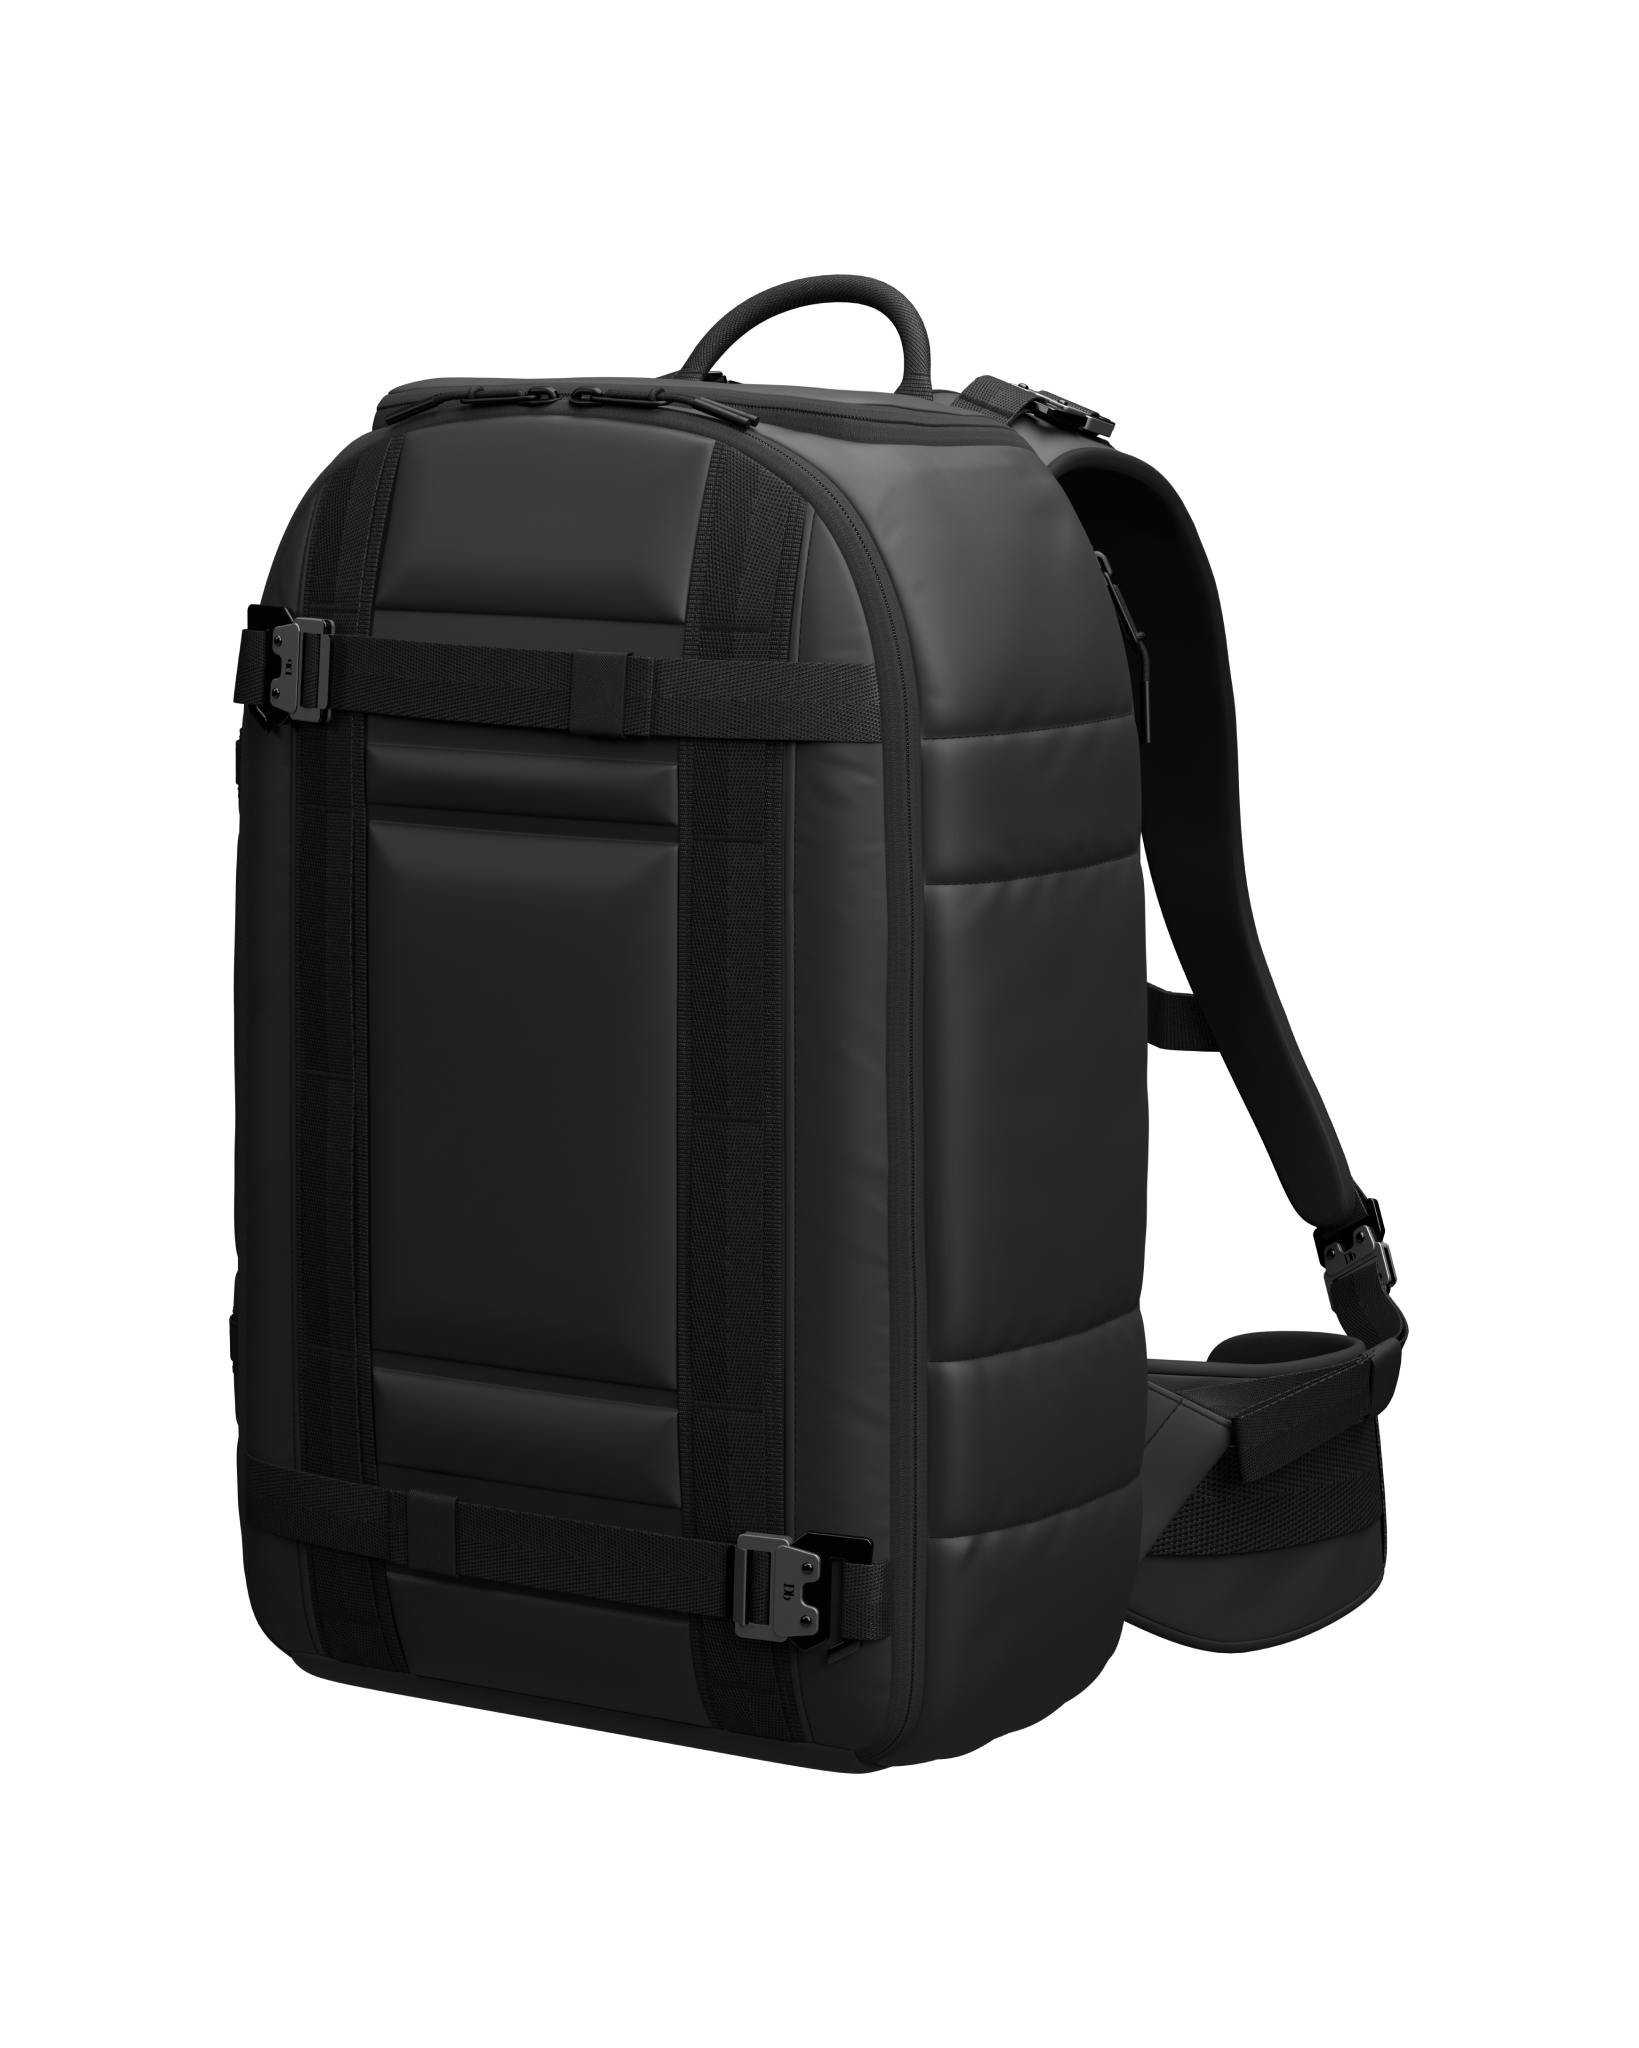 Ramverk Pro 1St Generation Backpack 26L Black Out - Black Out